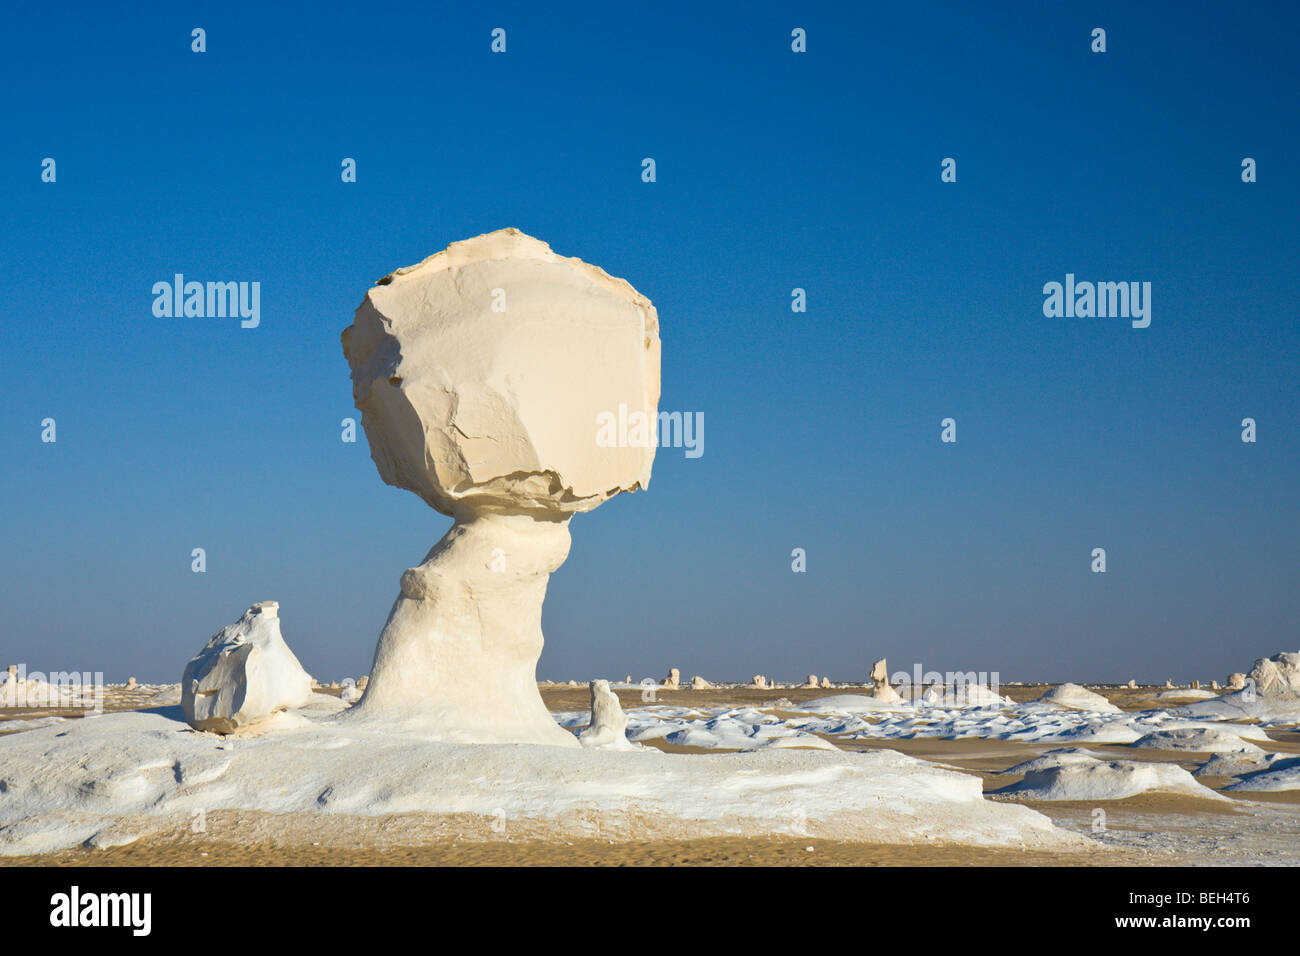 Formations of Lime Stone in White Desert National Park, Libyan Desert, Egypt Stock Photo